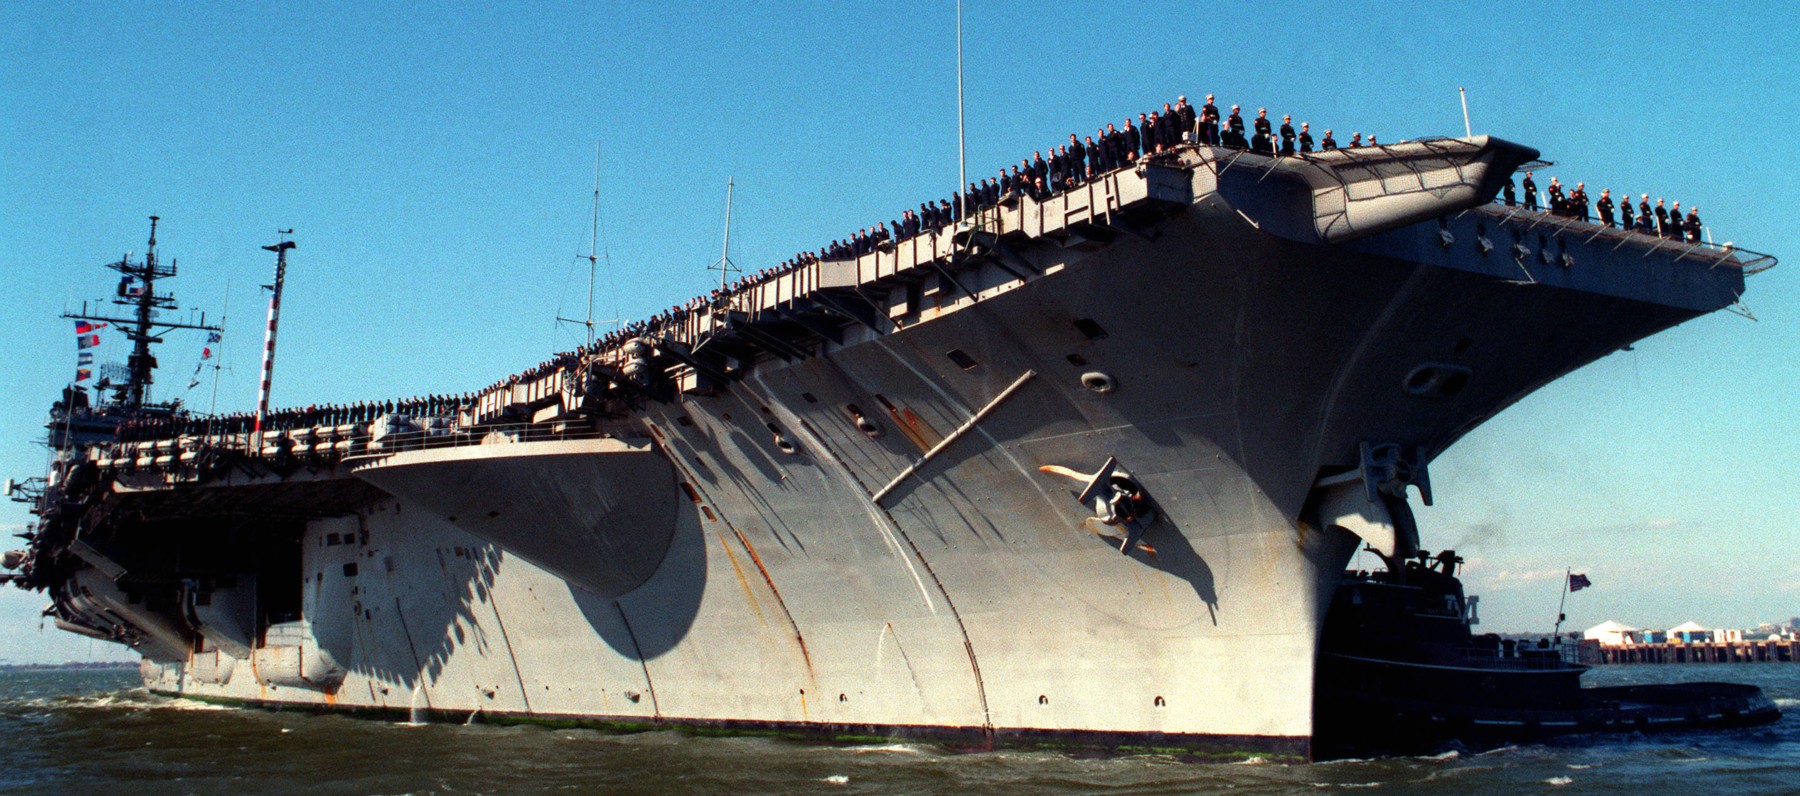 cv-66 uss america kitty hawk class aircraft carrier us navy 95